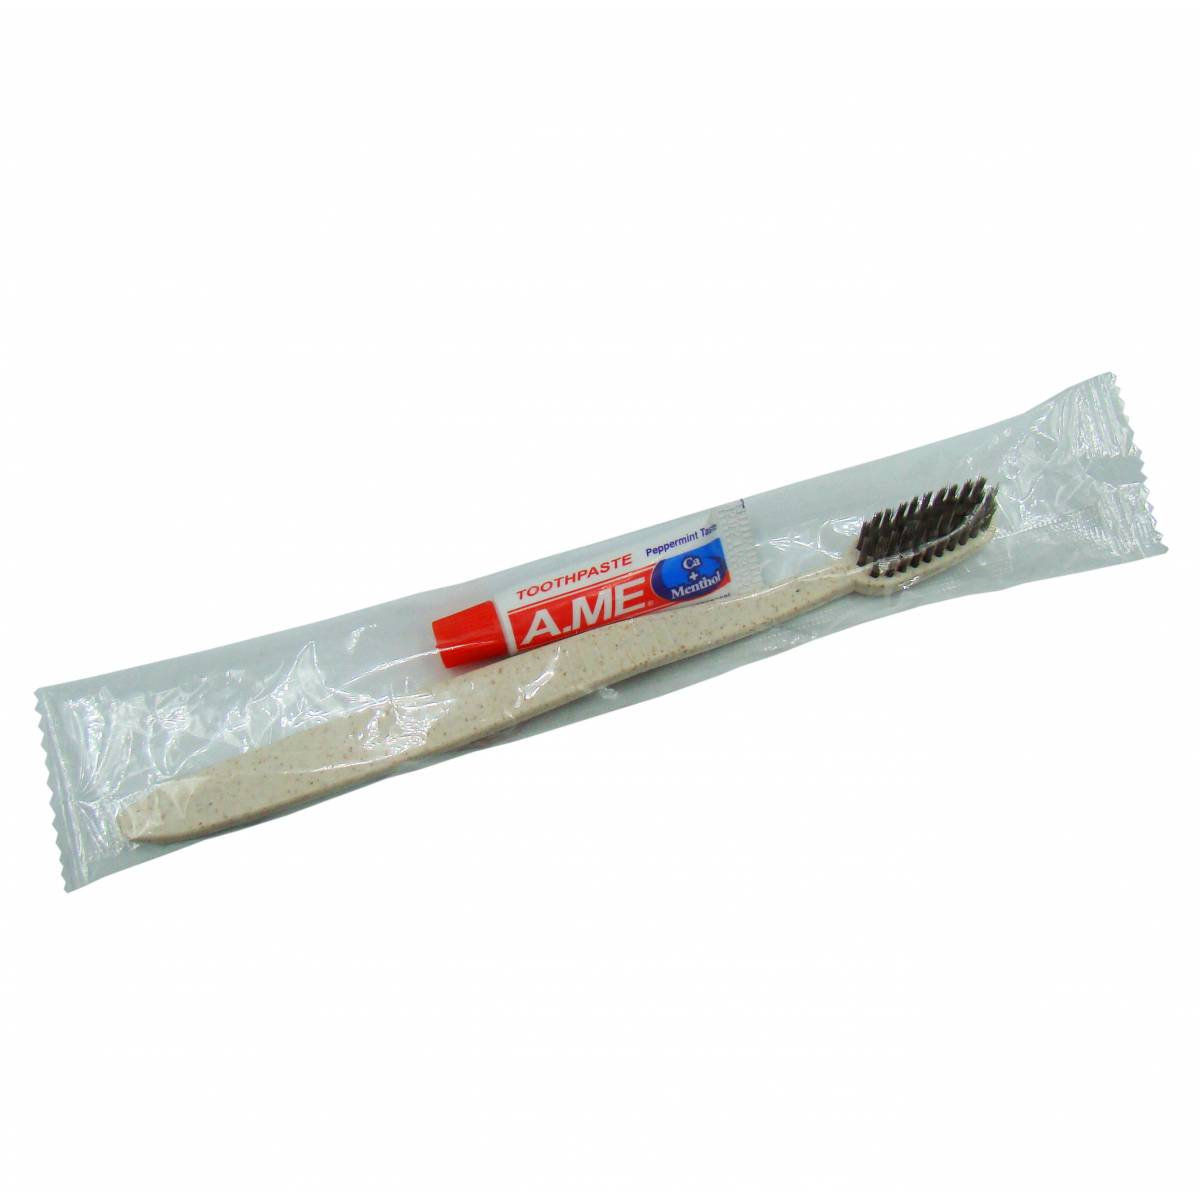 Зубной набор ECO, щетка 18 см и паста 6 гр. A.ME в п/э упаковке DK6/ECO HSG